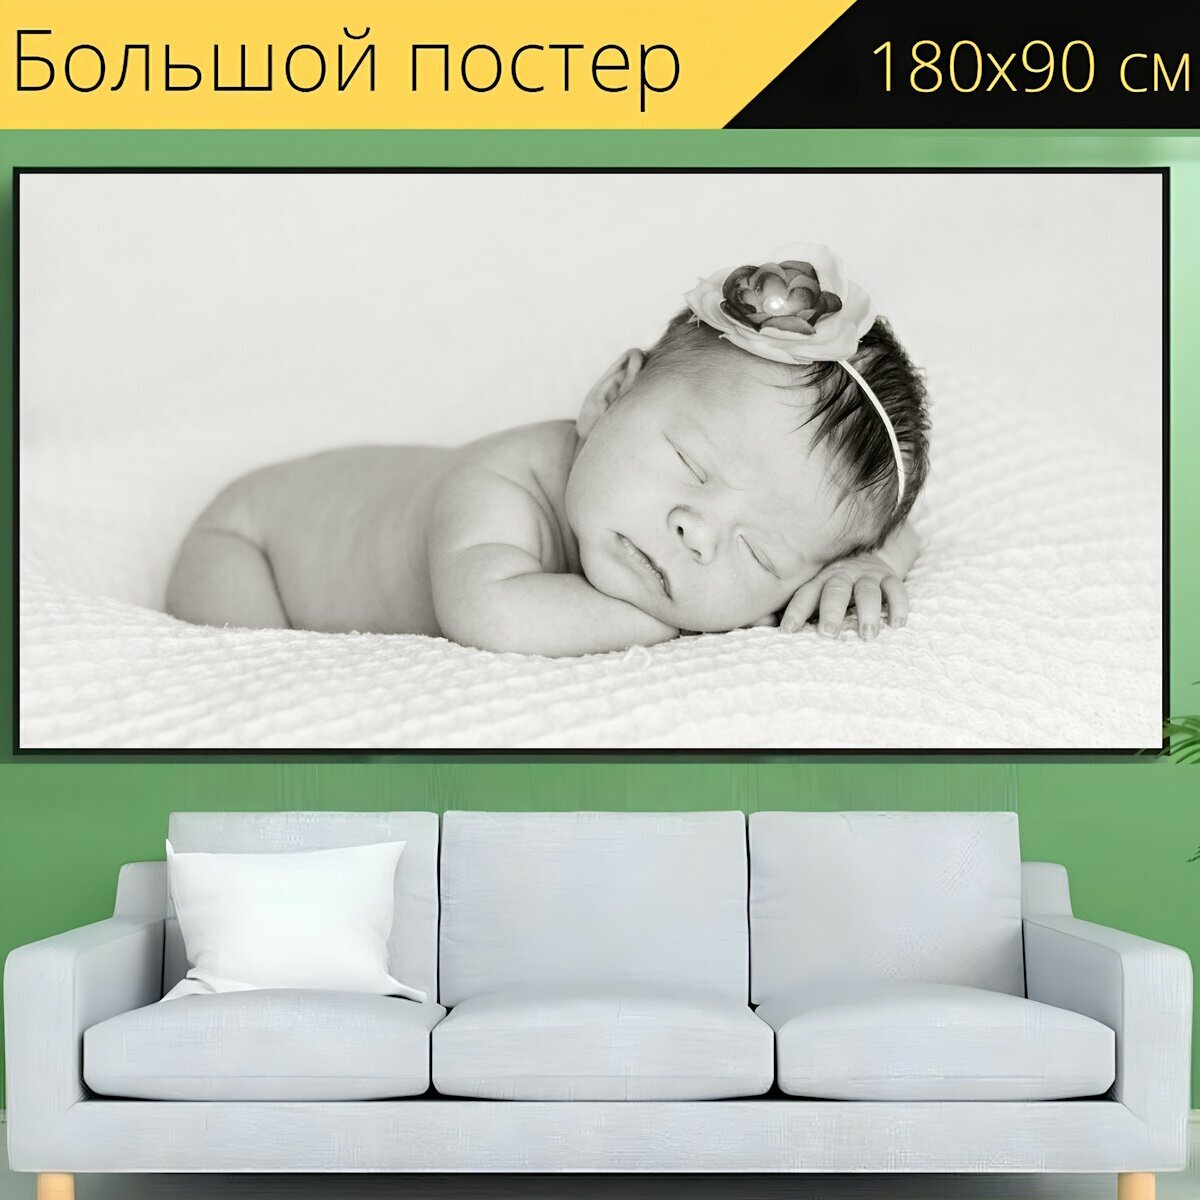 Большой постер "Новорожденный, детка, спать" 180 x 90 см. для интерьера